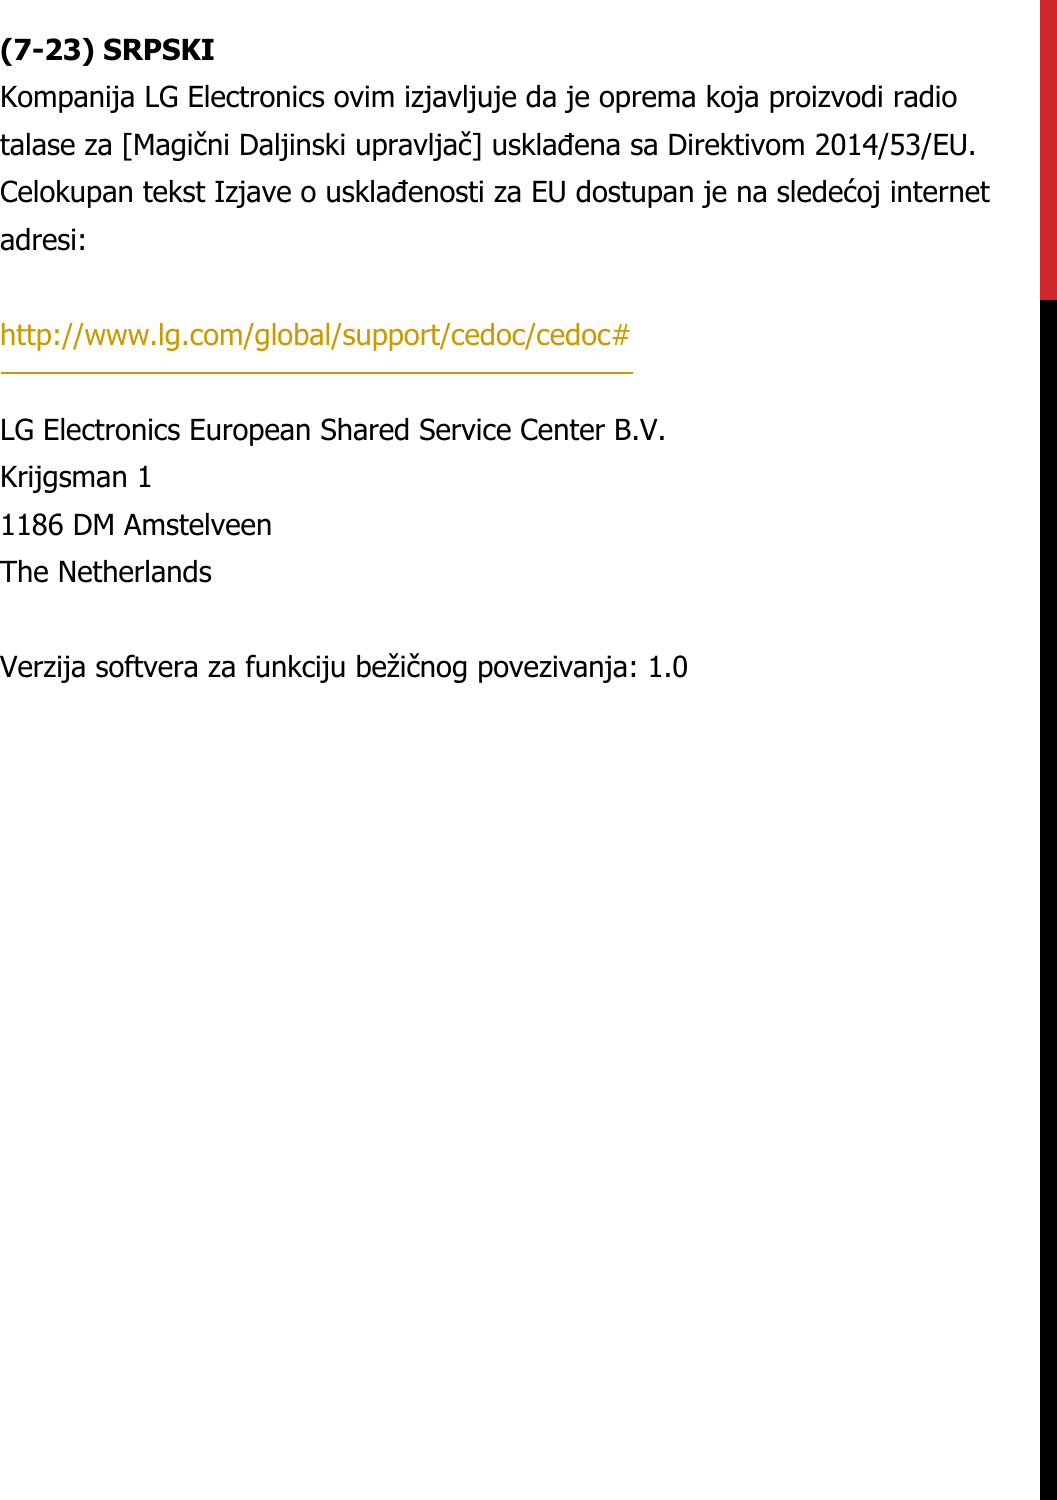 (7-23) SRPSKIKompanija LG Electronics ovim izjavljuje da je oprema koja proizvodi radio talase za [Magični Daljinski upravljač] usklađena sa Direktivom 2014/53/EU. Celokupan tekst Izjave o usklađenosti za EU dostupan je na sledećoj internet adresi:   http://www.lg.com/global/support/cedoc/cedoc#   LG Electronics European Shared Service Center B.V.  Krijgsman 1  1186 DM Amstelveen  The Netherlands   Verzija softvera za funkciju bežičnog povezivanja: 1.0